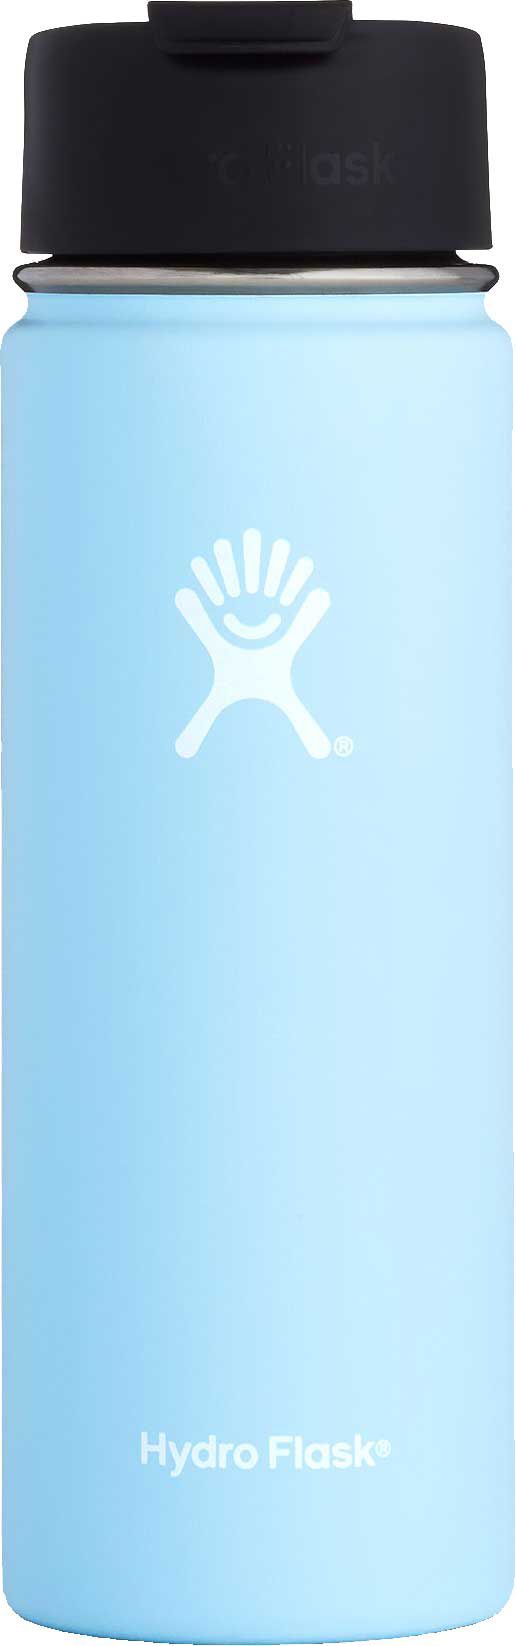 powder blue hydro flask